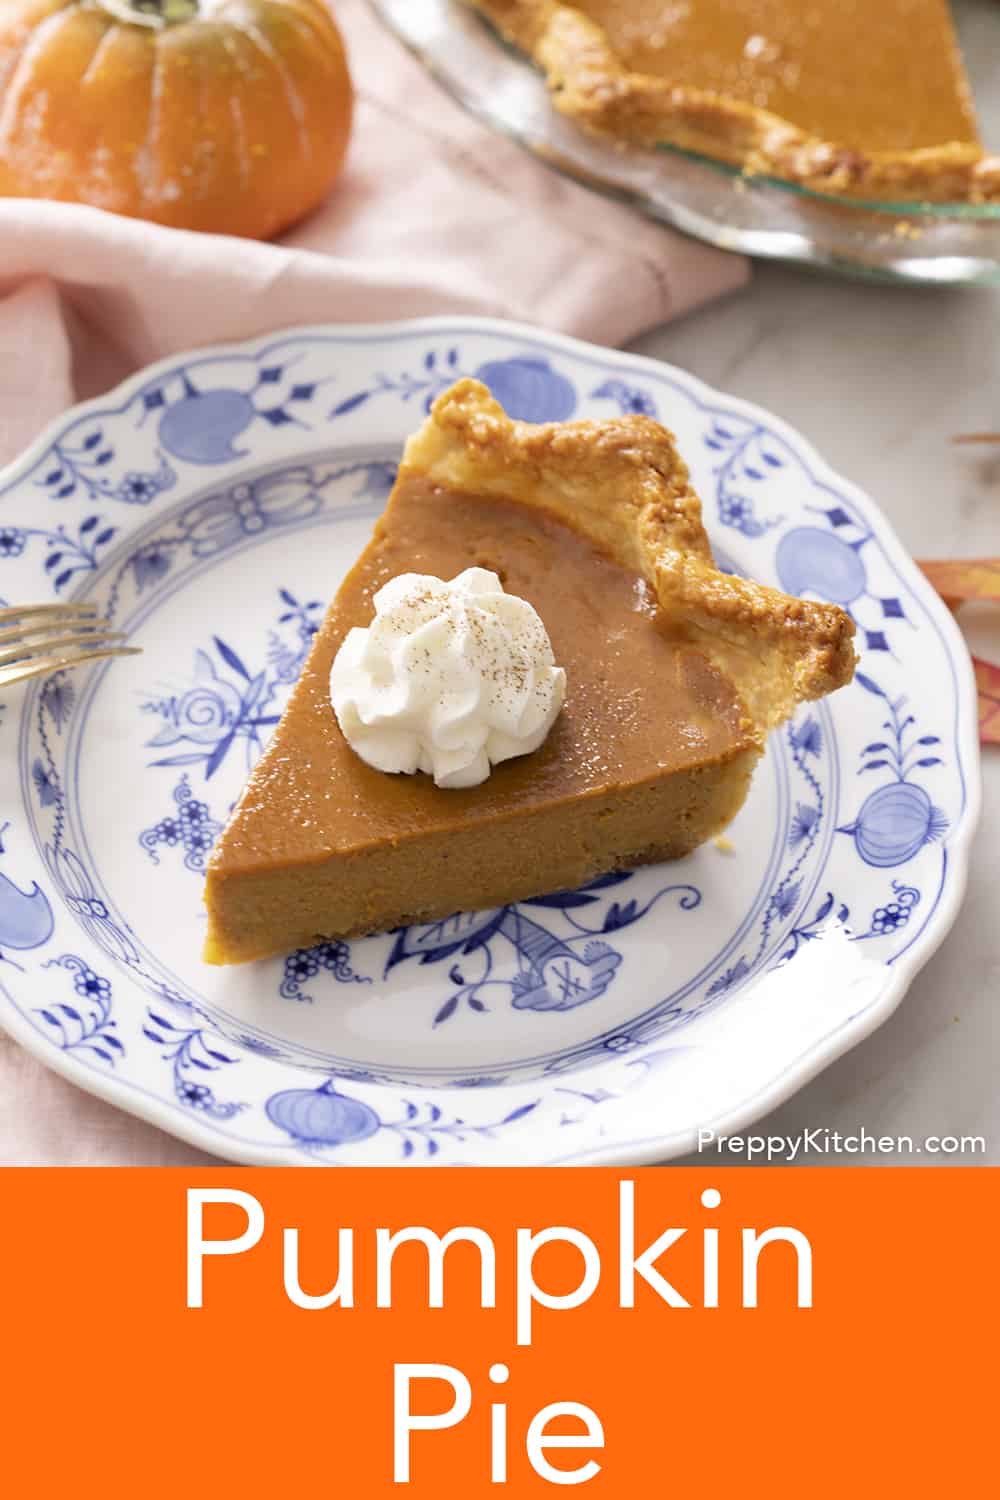 Pumpkin Pie Recipe - Preppy Kitchen